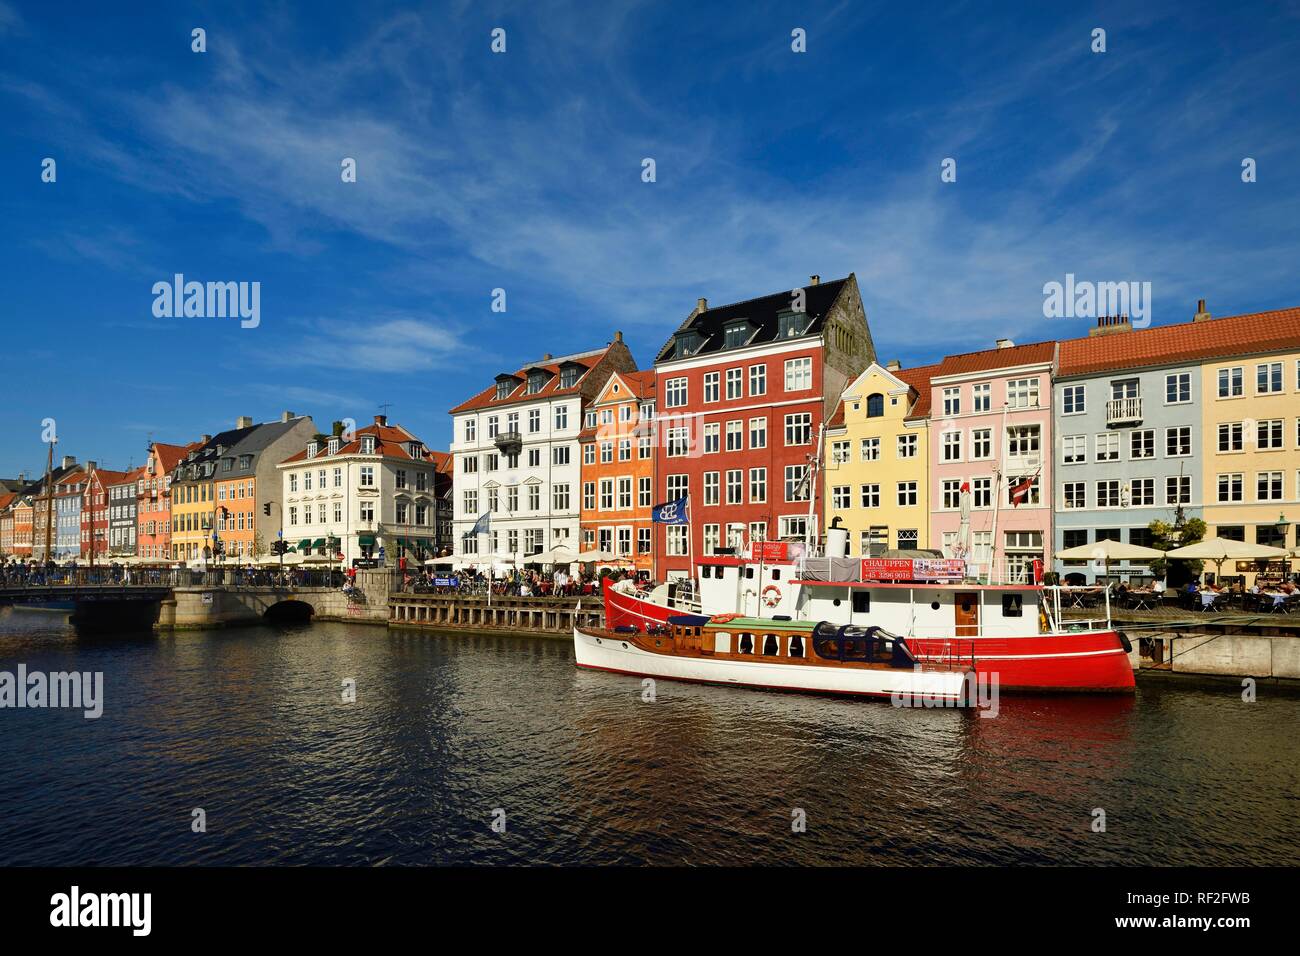 Boote auf dem Kanal vor bunten Häuserfassaden, Entertainment District, Nyhavn, Kopenhagen, Dänemark Stockfoto